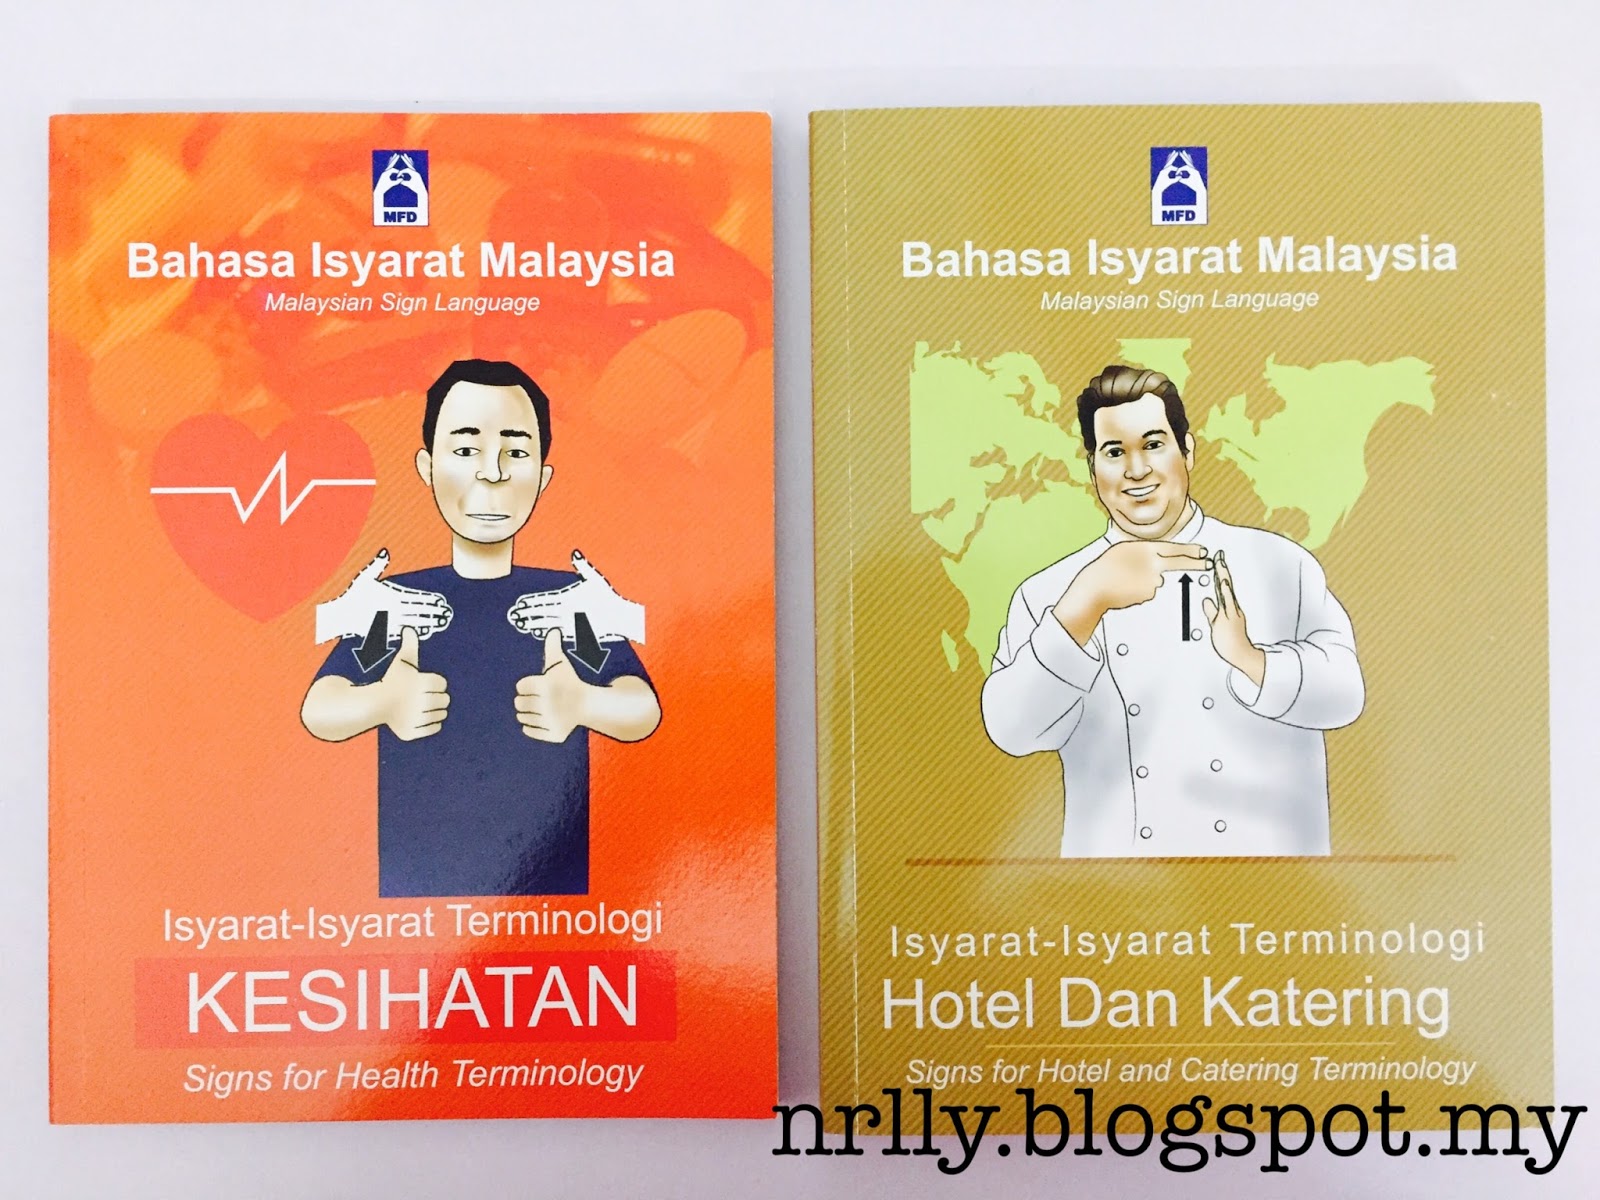 Bahasa Isyarat Malaysia (BIM) or Malaysian Sign Language ...